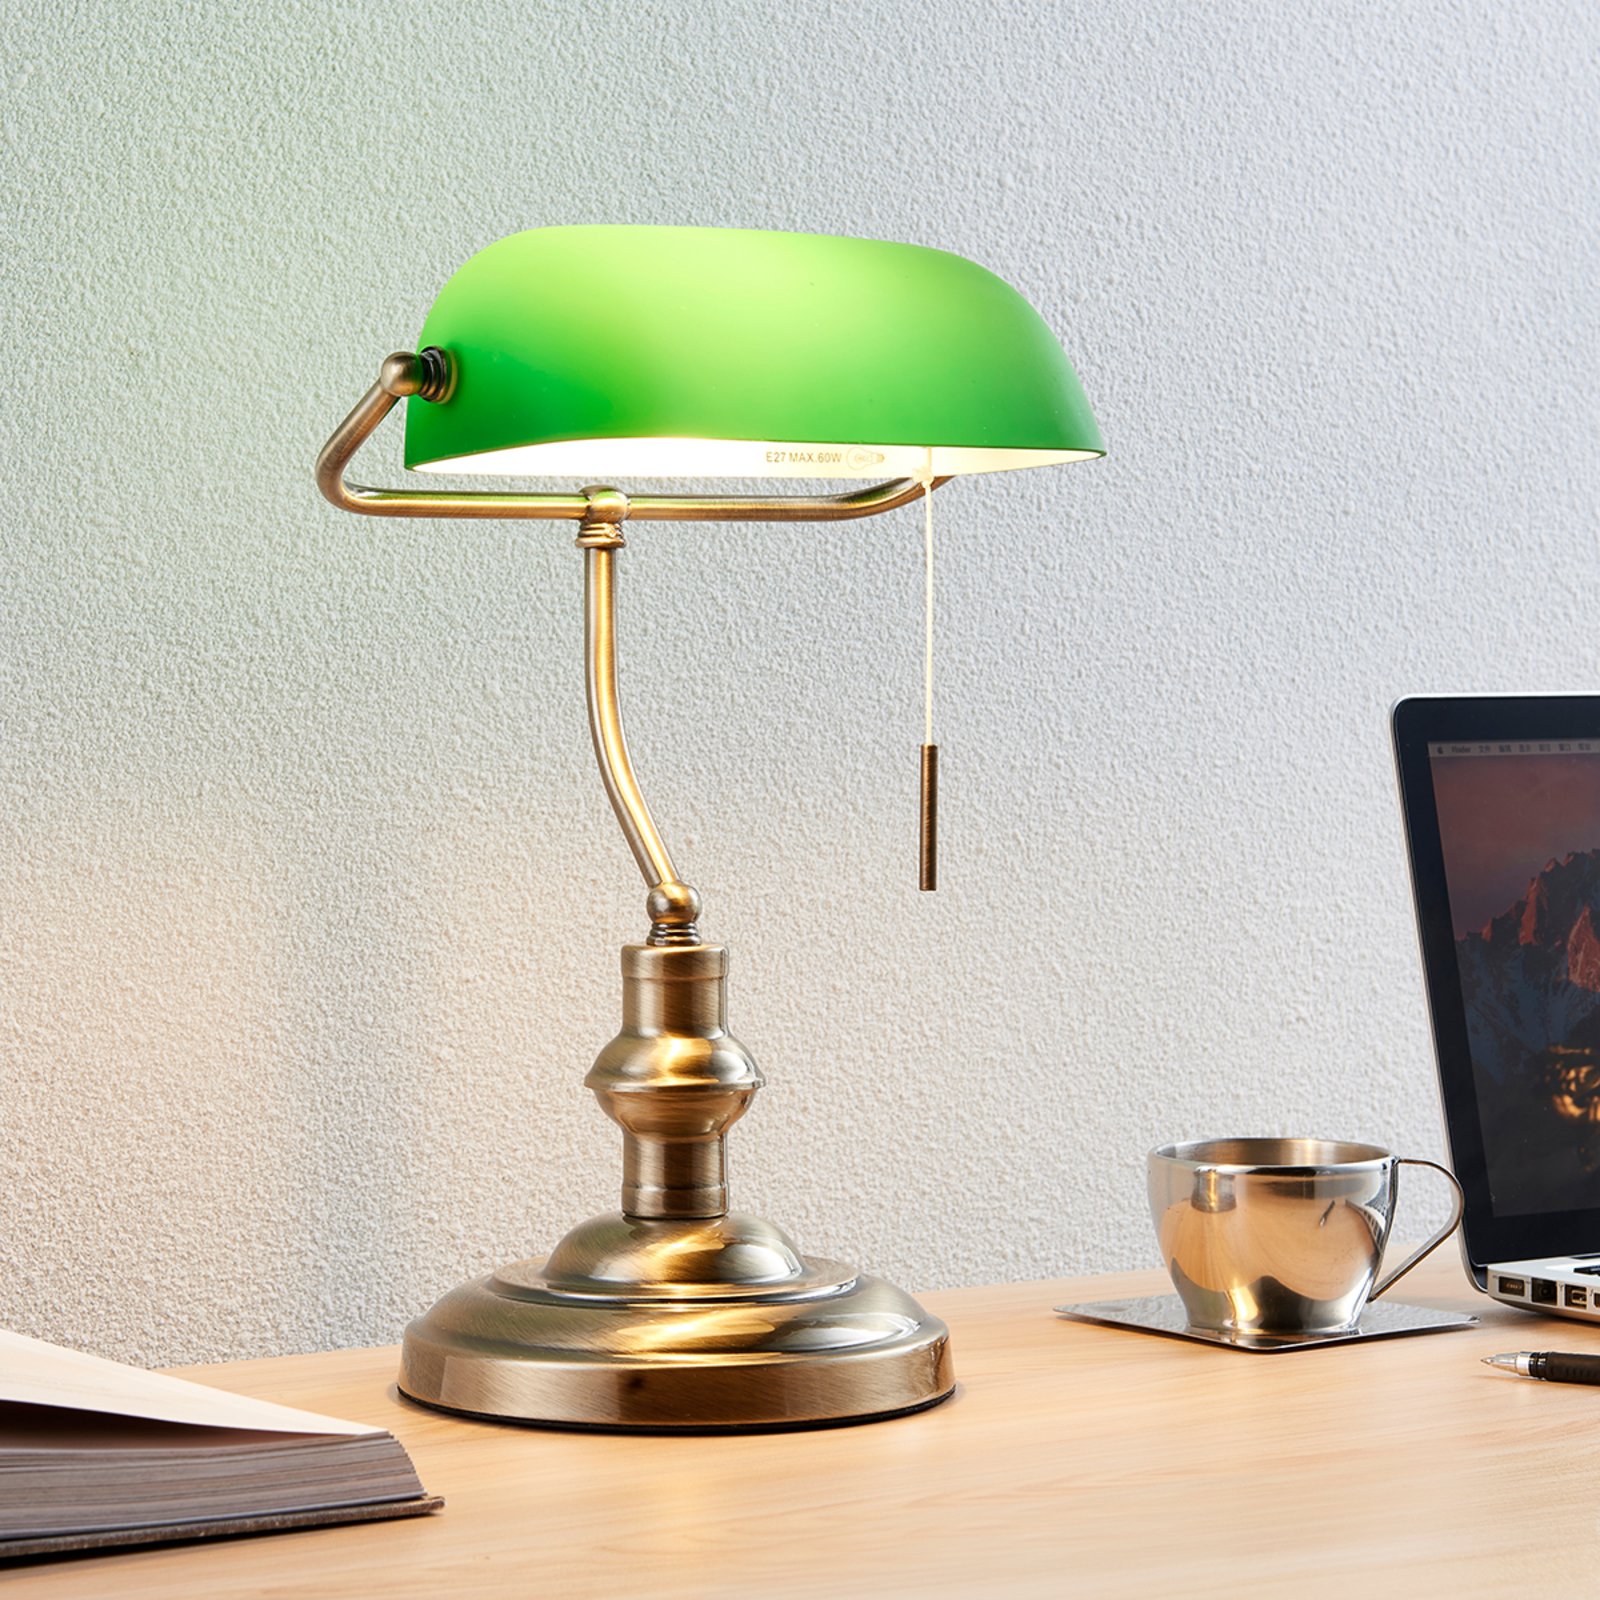 fritaget Udlevering boom Milenka - skrivebordslampe med grøn skærm | Lampegiganten.dk